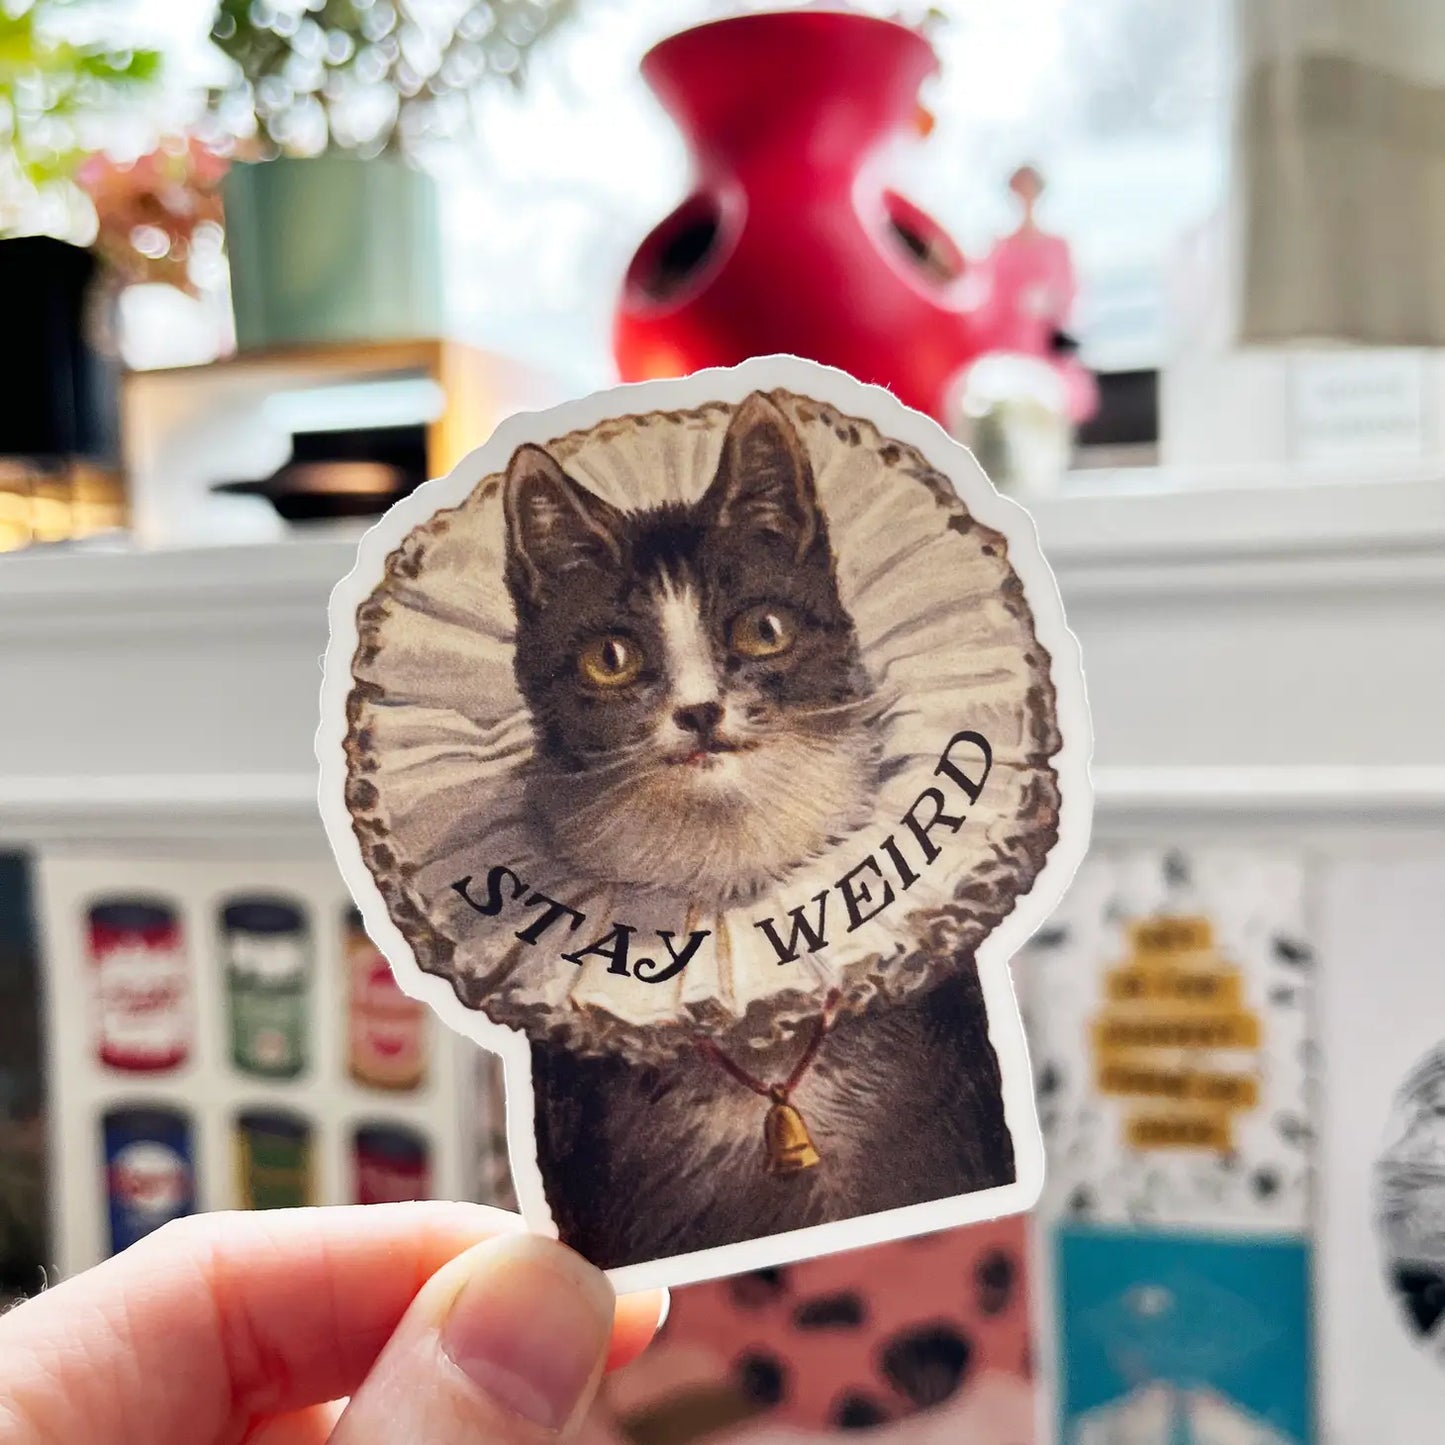 Stay Weird Vinyl Kitty Sticker